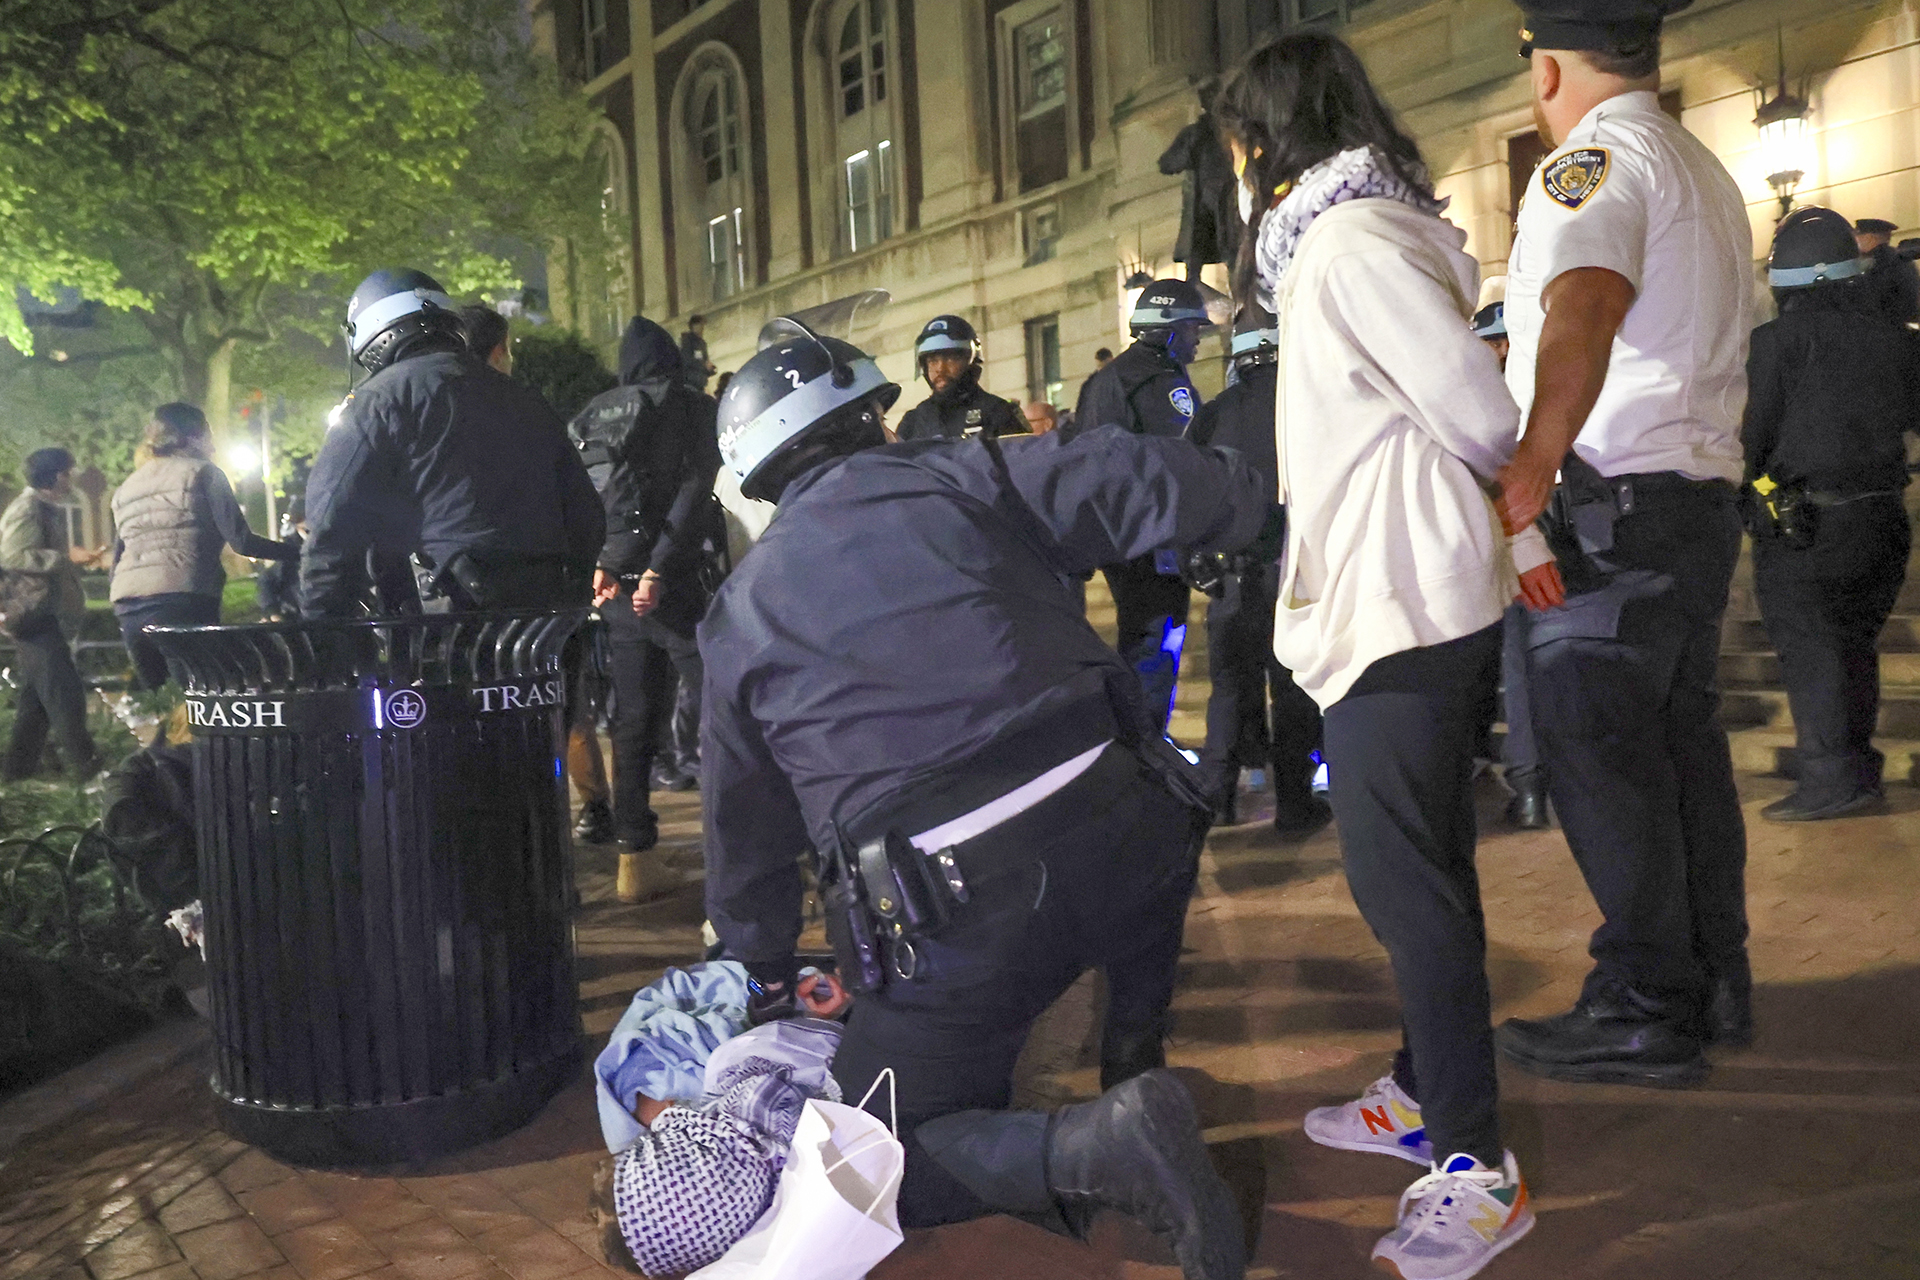 صحفية أميركية: قمع احتجاجات طلاب الجامعات كان وحشيا | أخبار – البوكس نيوز